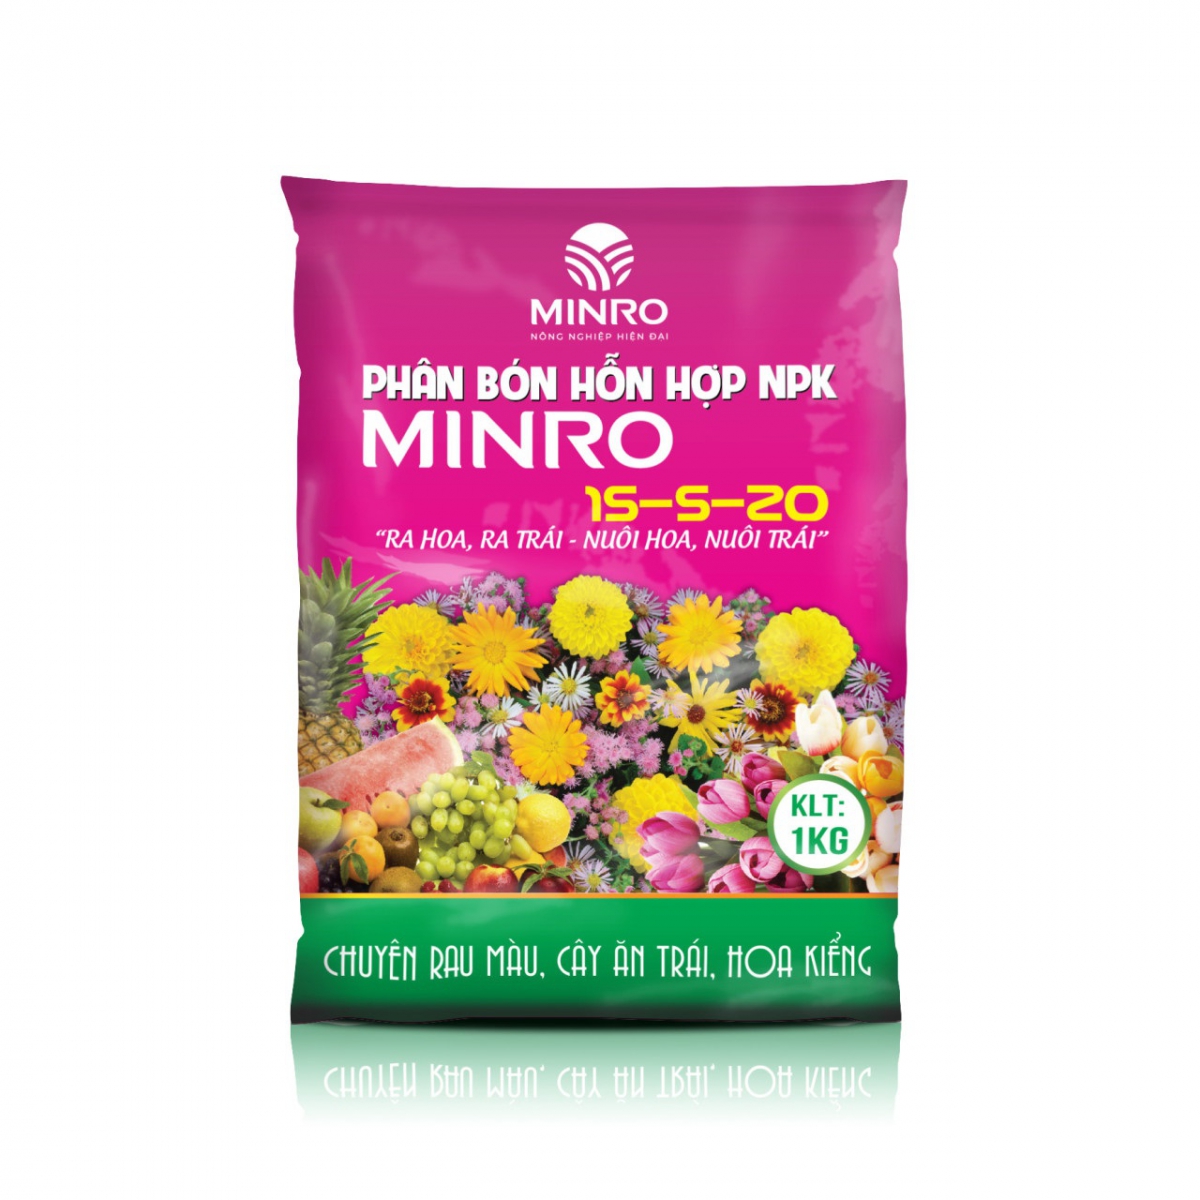 Phân bón hỗn hợp NPK Minro 15-5-20 (200gr – 1kg)